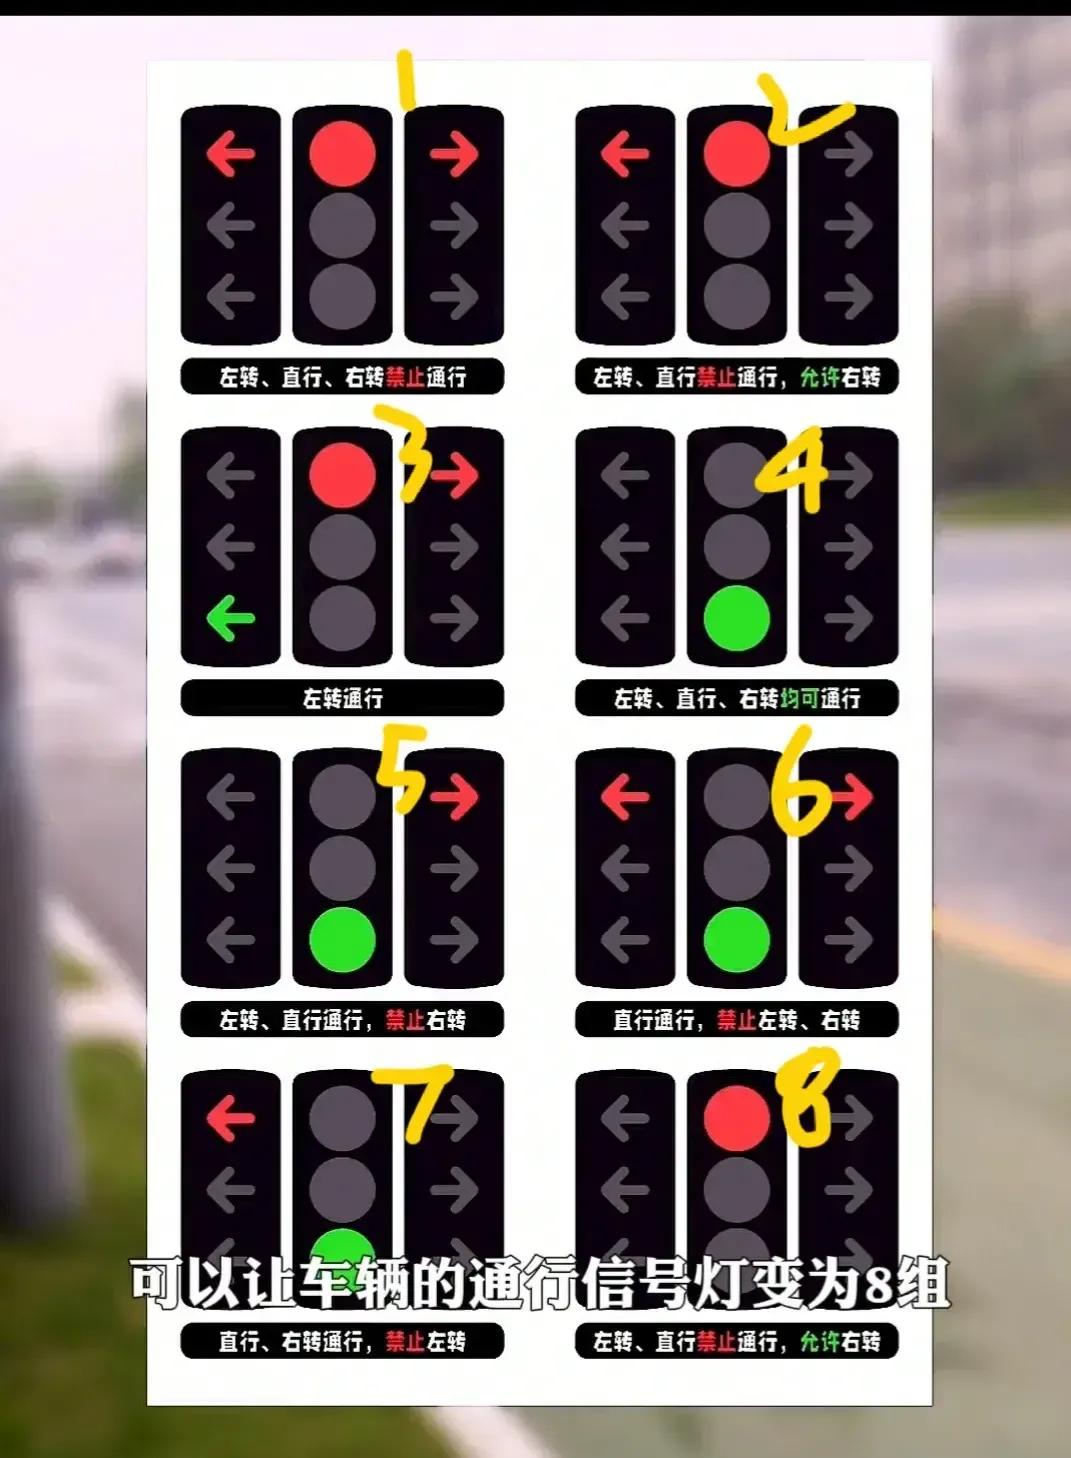 新国标红绿灯来了,关系到每一位车主,不然6分就没了新国标规